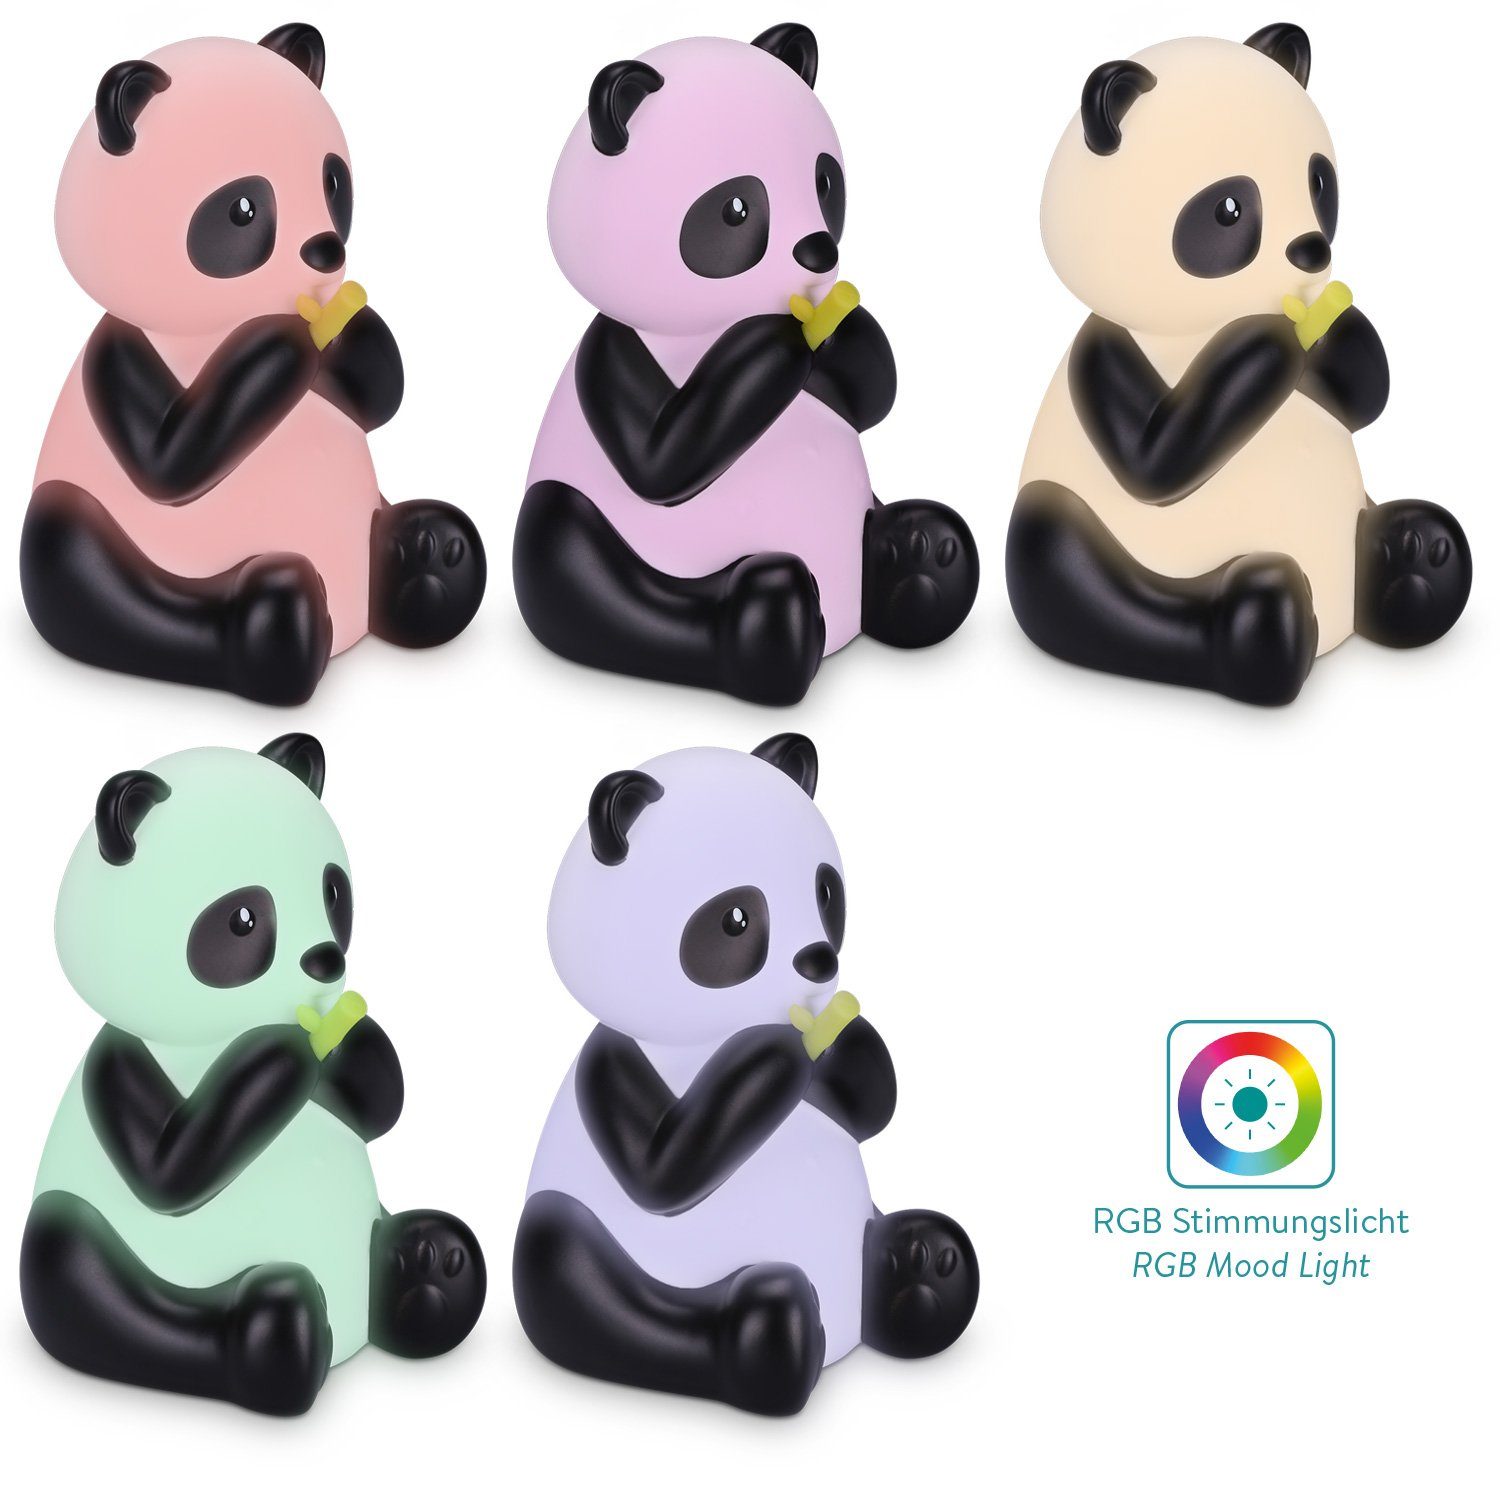 RGB - Navaris Nachtlicht Farbwechsel Panda Süße Design LED Nachtlampe Nachtleuchte